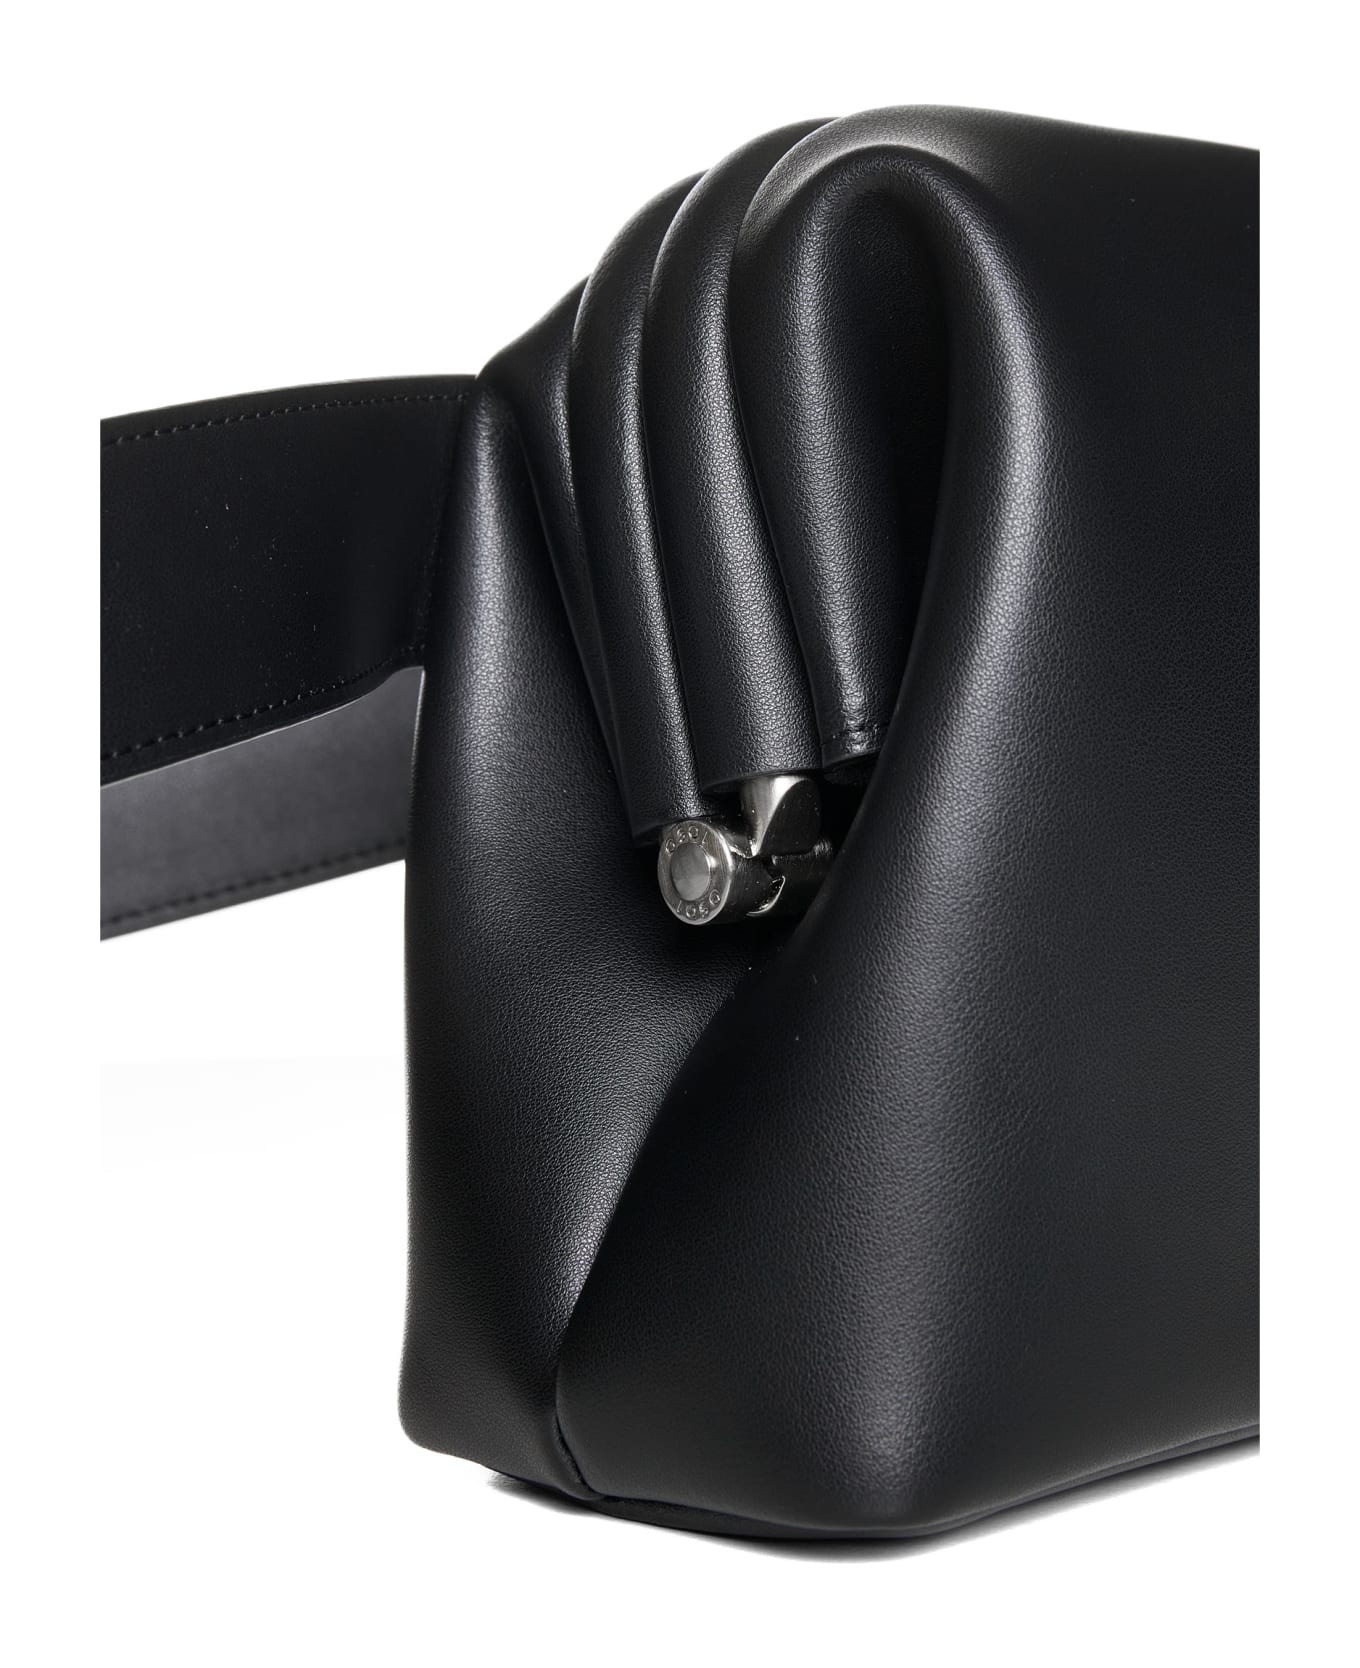 OSOI Shoulder Bag - Black ベルトバッグ